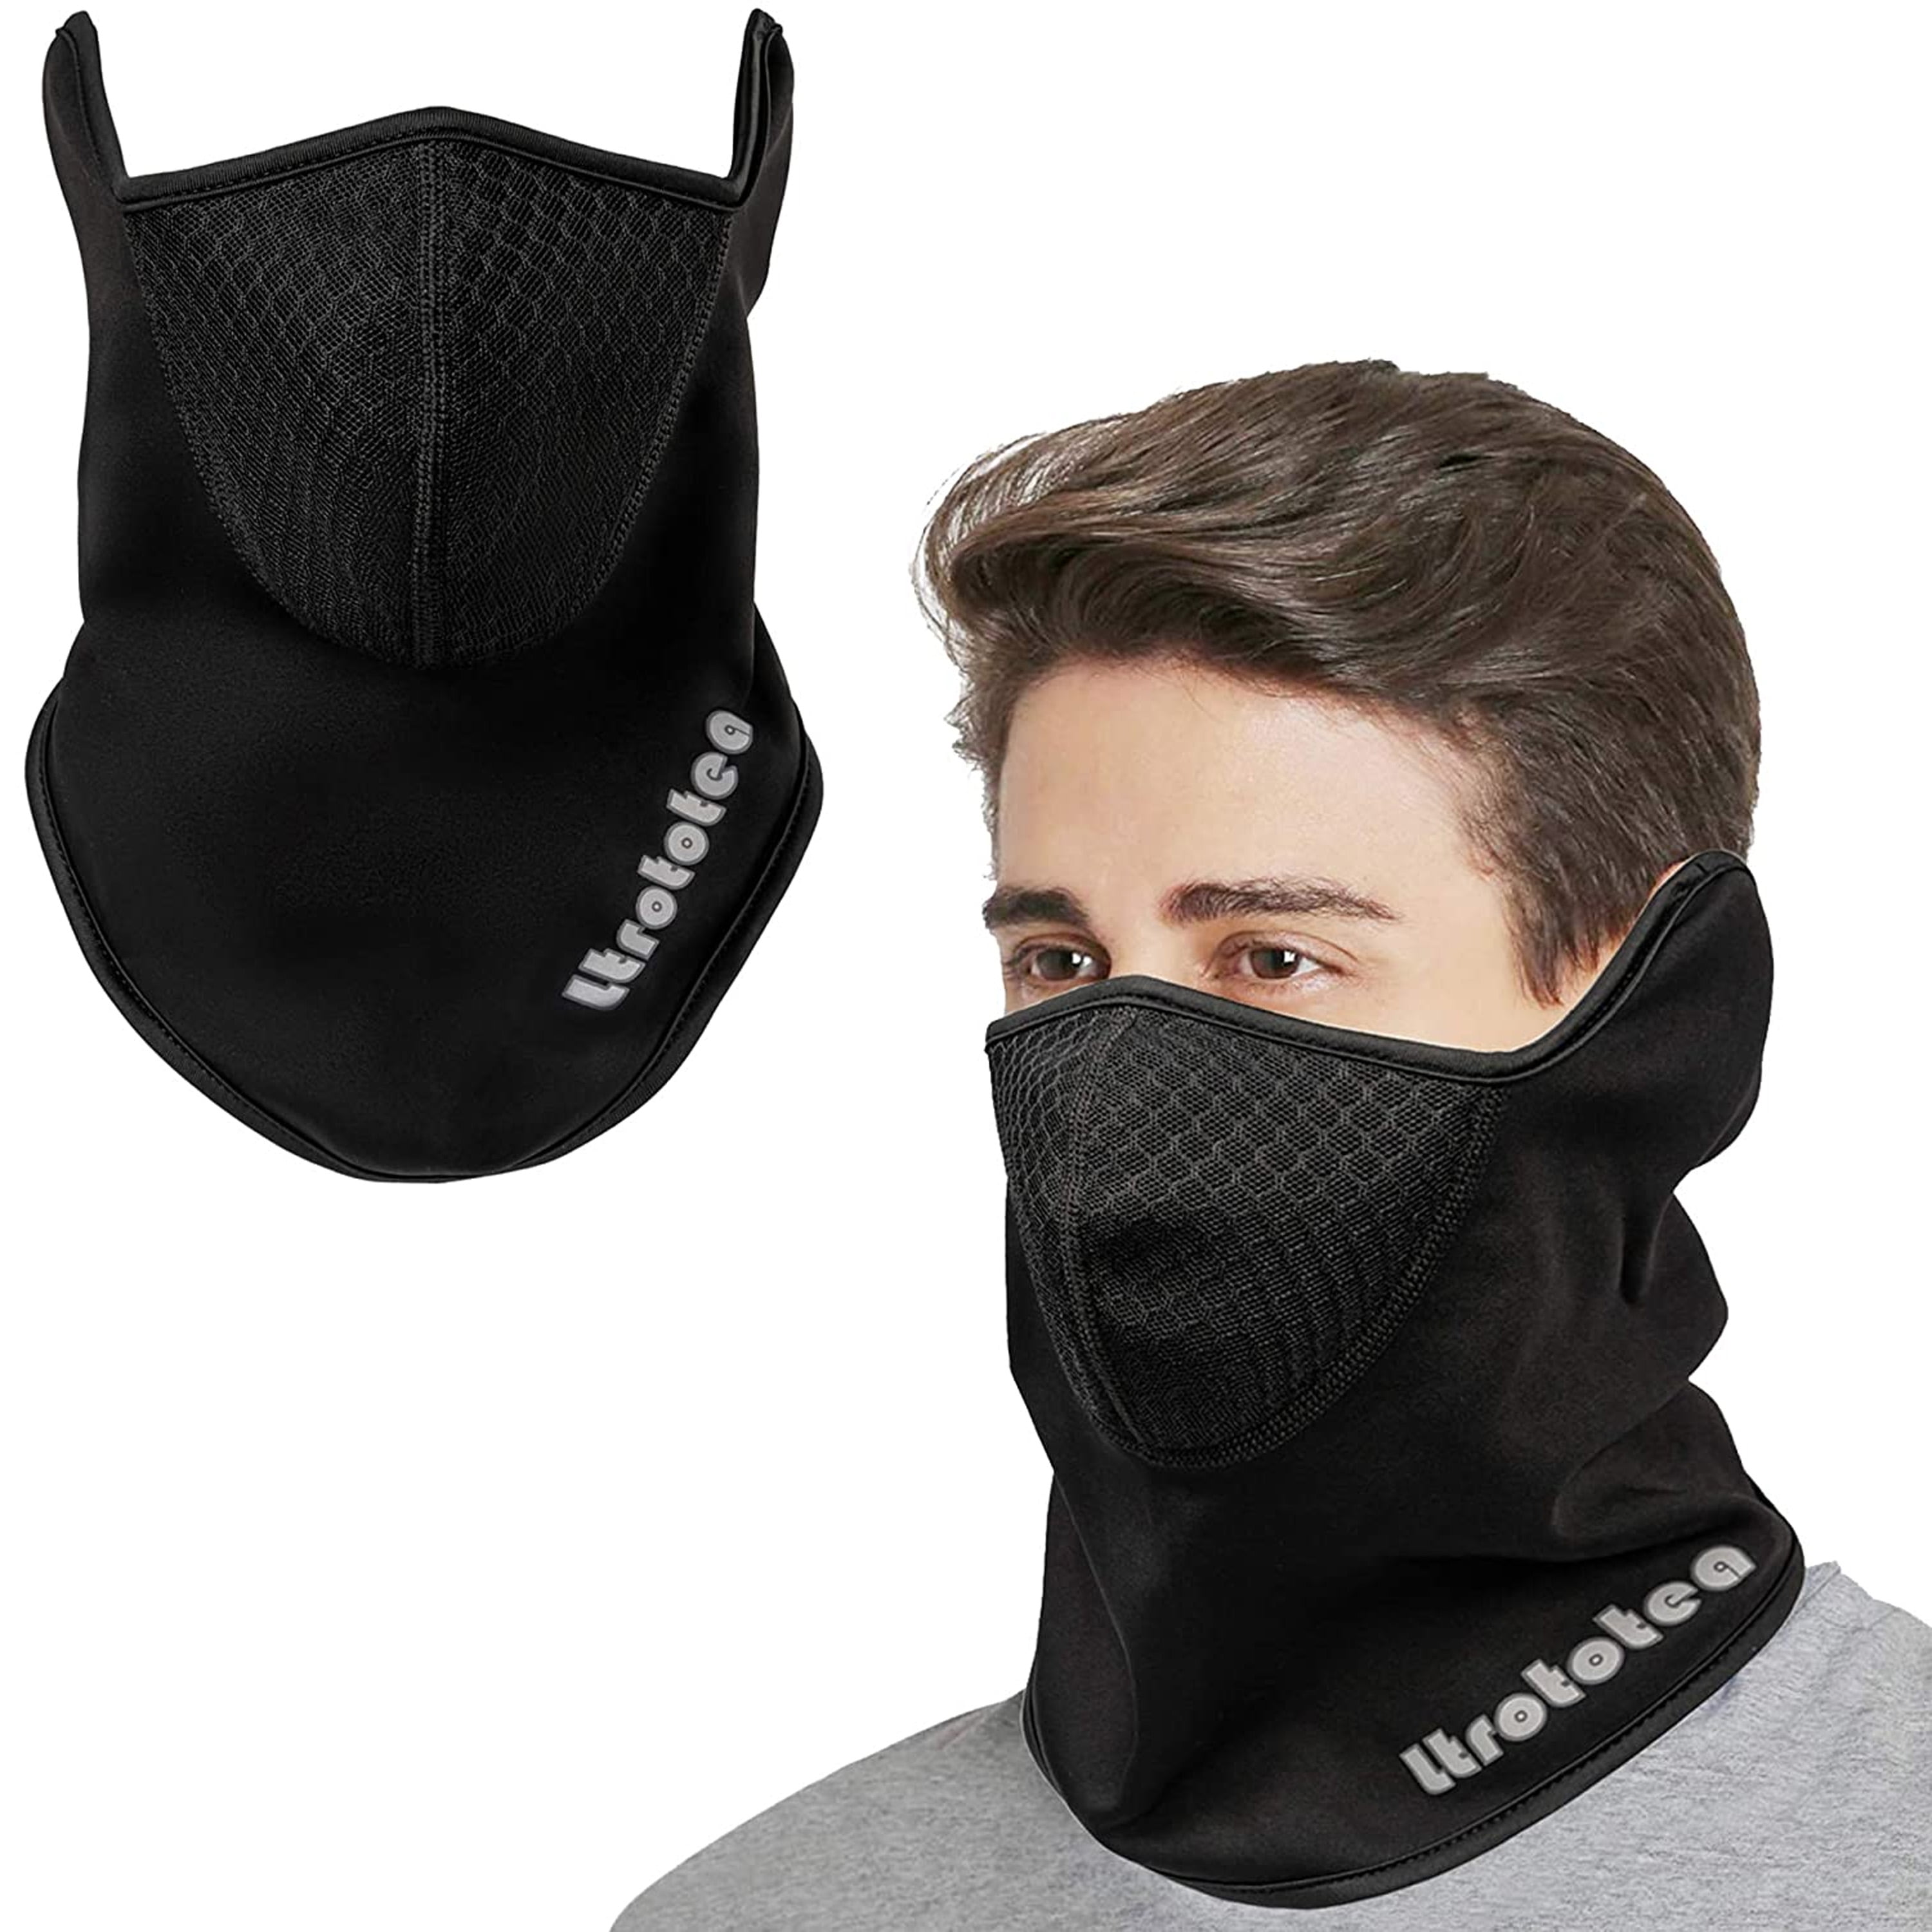 2x Magic Scarf Bandana Neck Warmer Head Wear Mask Balaclava Ski Bike Run Outdoor 